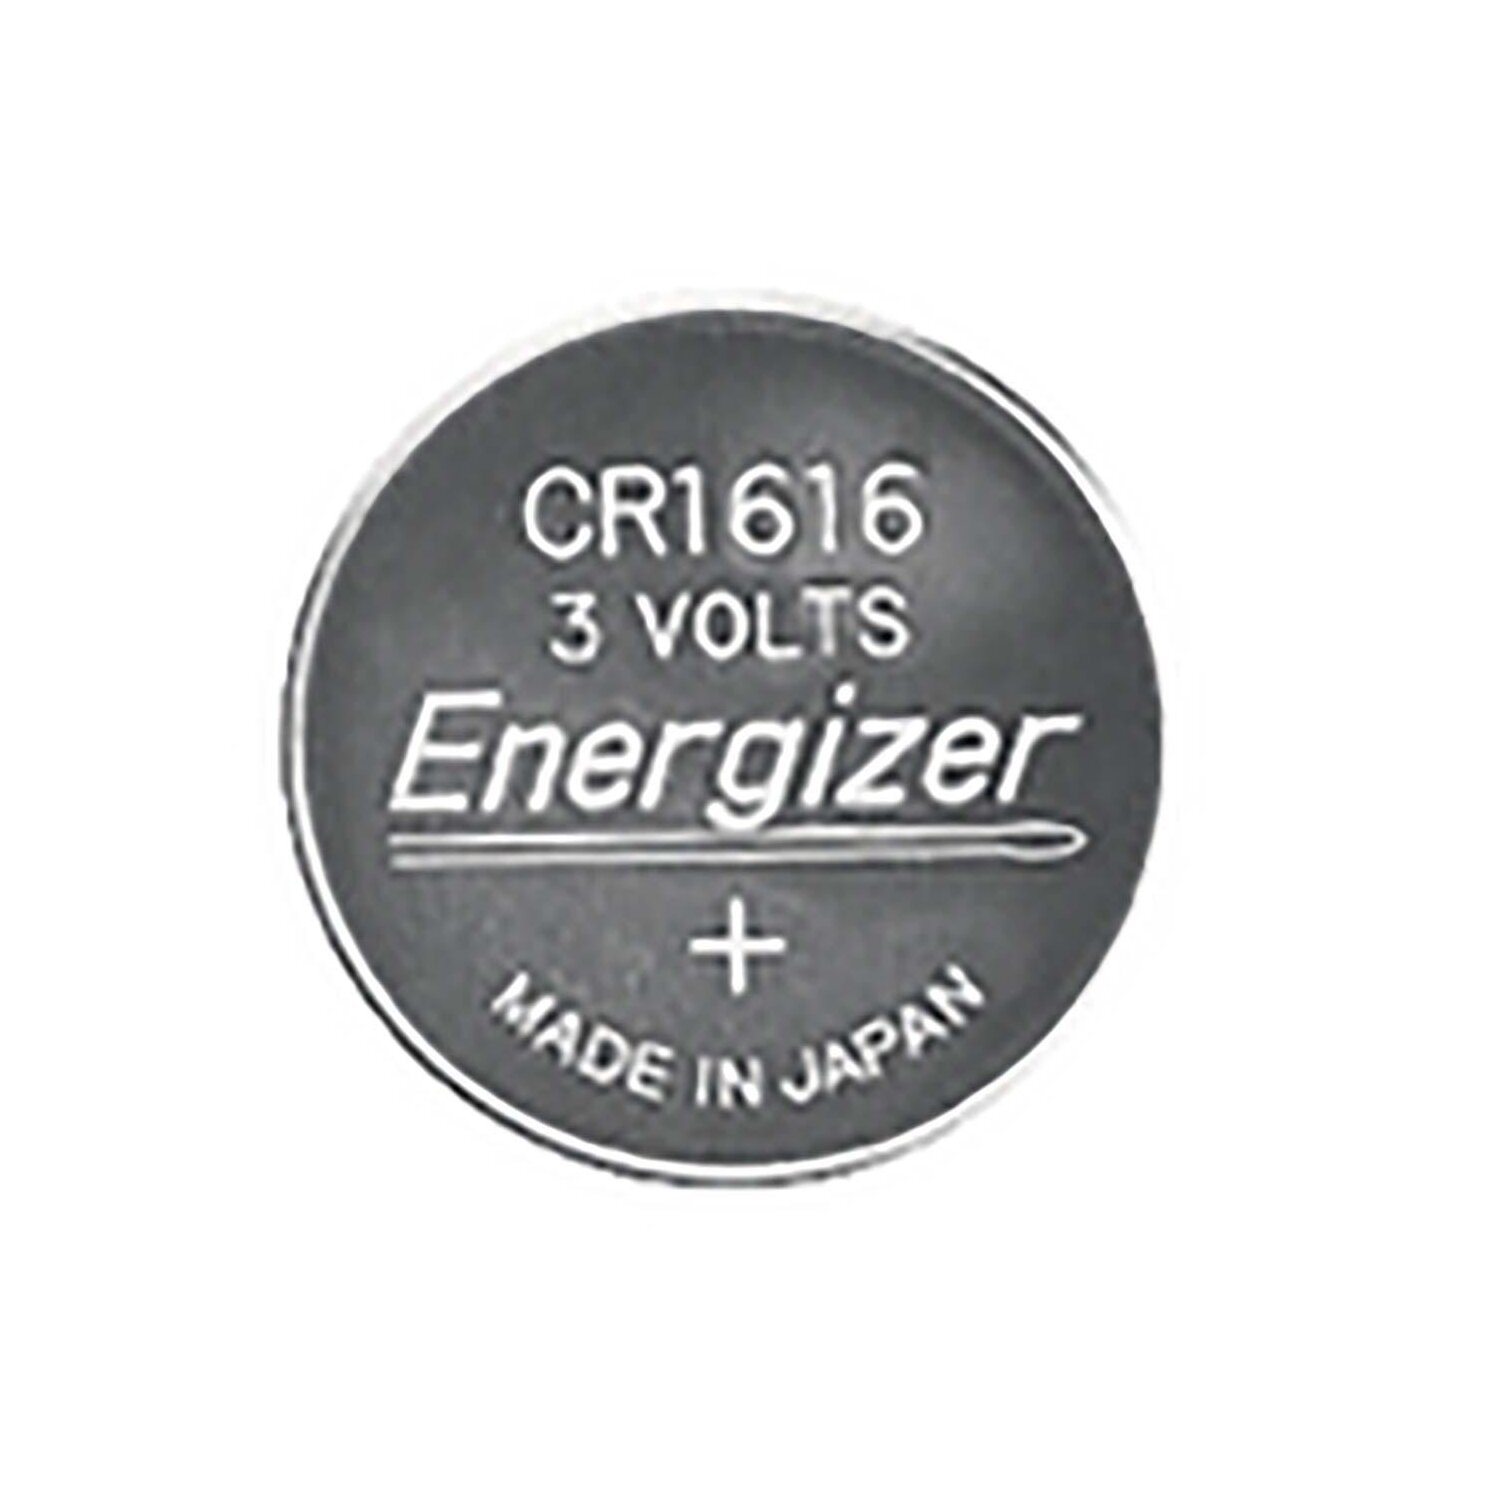 1 x Energizer CR1616 3V Lithium Batterie Knopfzelle 60mAh im Blister 